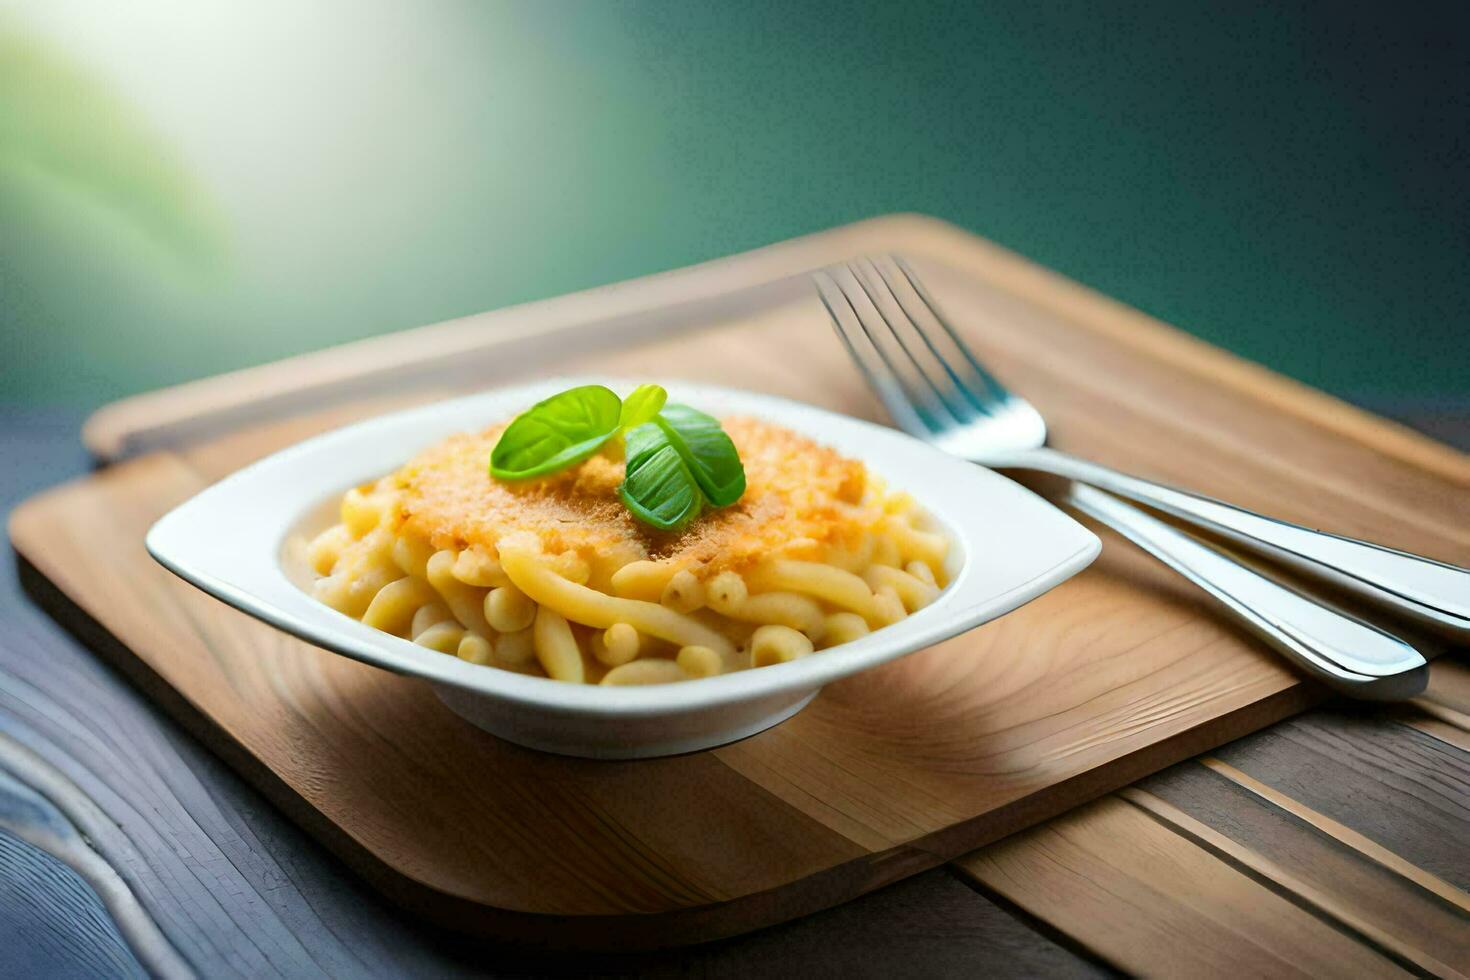 macaroni et fromage dans une bol. généré par ai photo